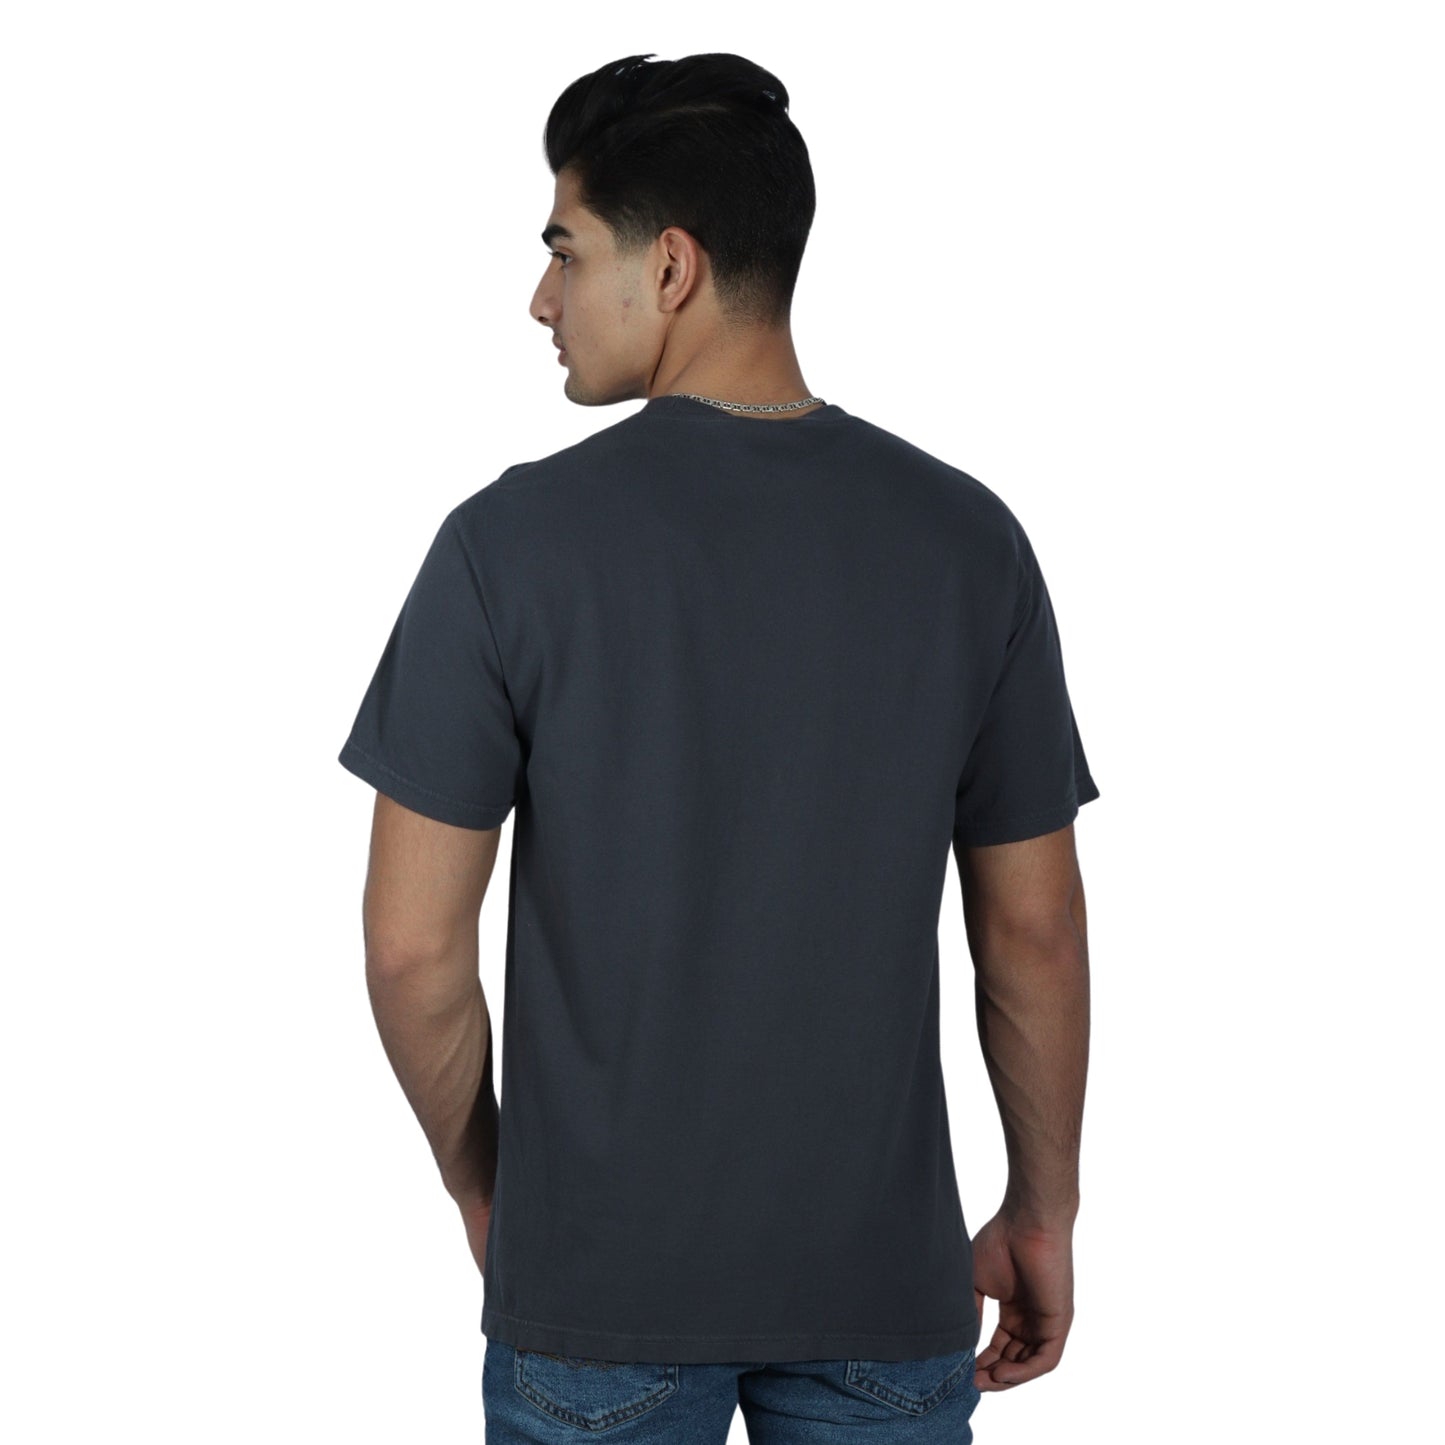 COMFORT COLORS Mens Tops M / Grey COMFORT COLORS - Short Sleeve T-Shirt